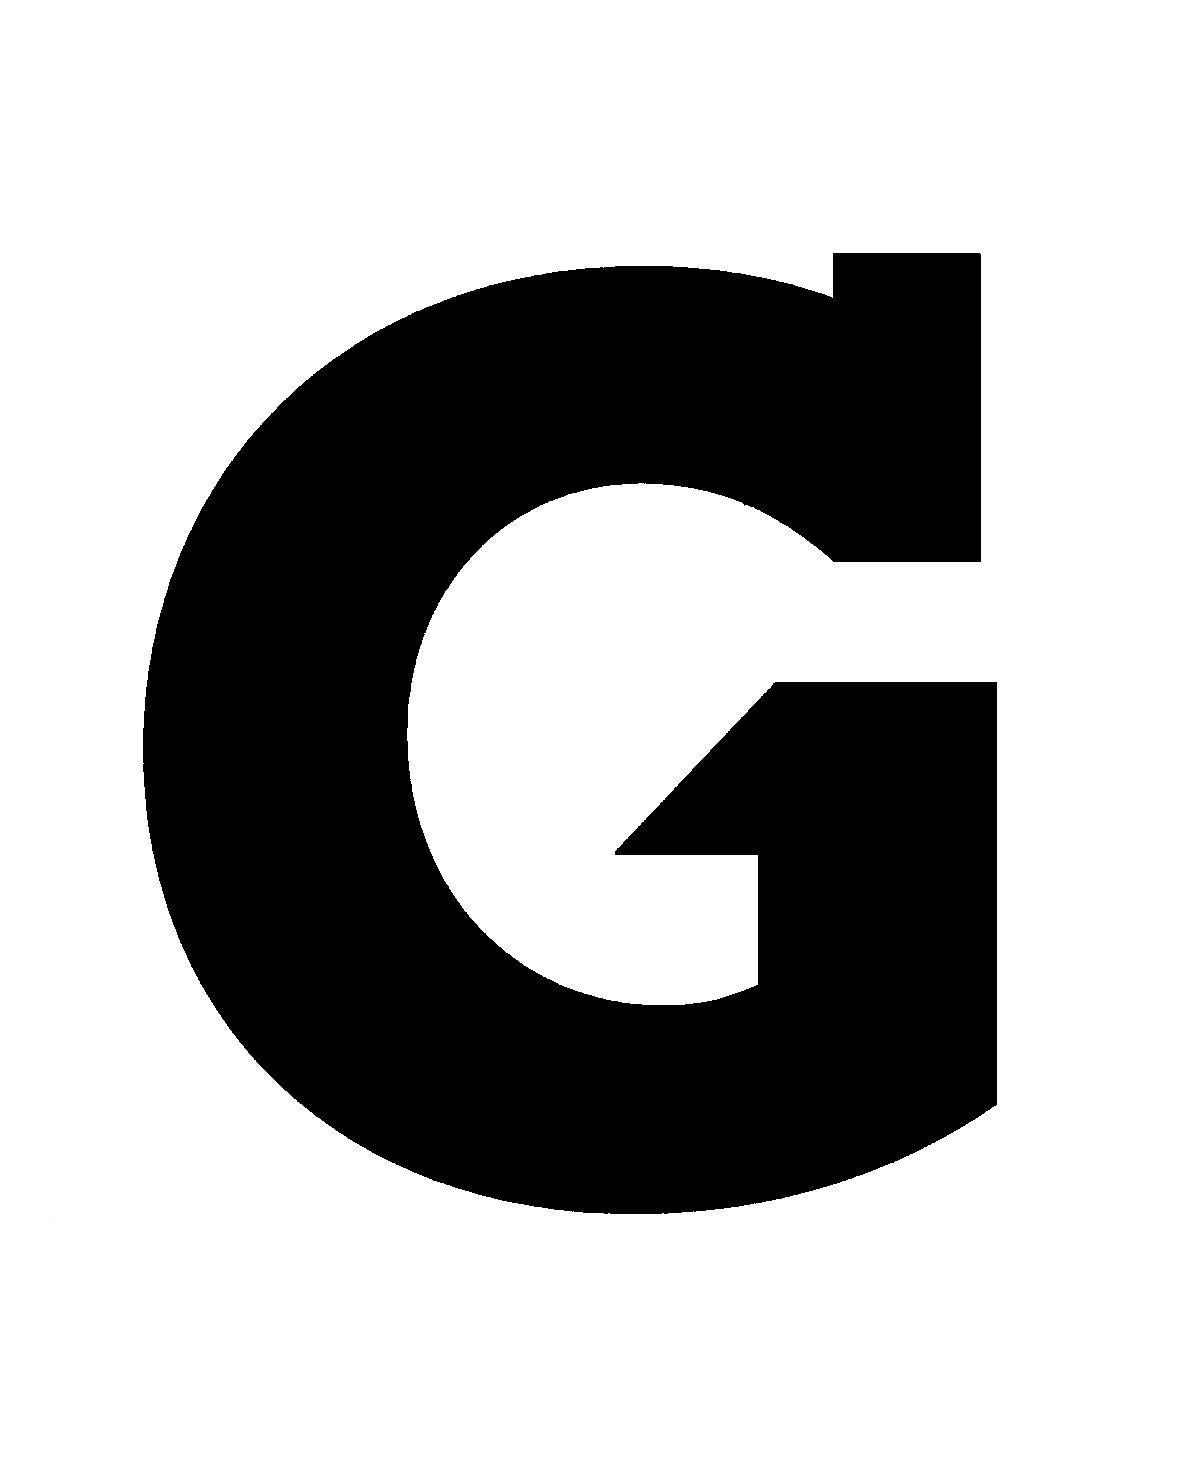 Gatorade G Logo - G symbol Logos